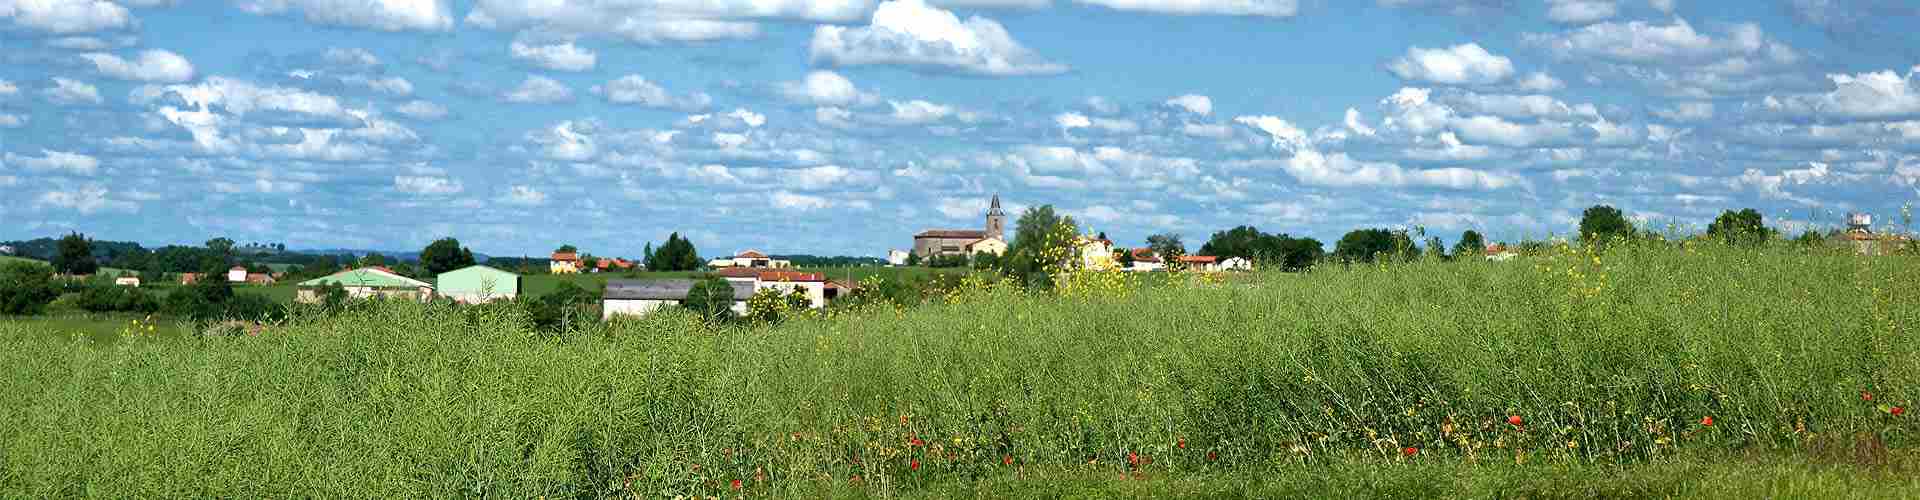 Casas rurales en Tañabueyes
           
           


          
          
          
